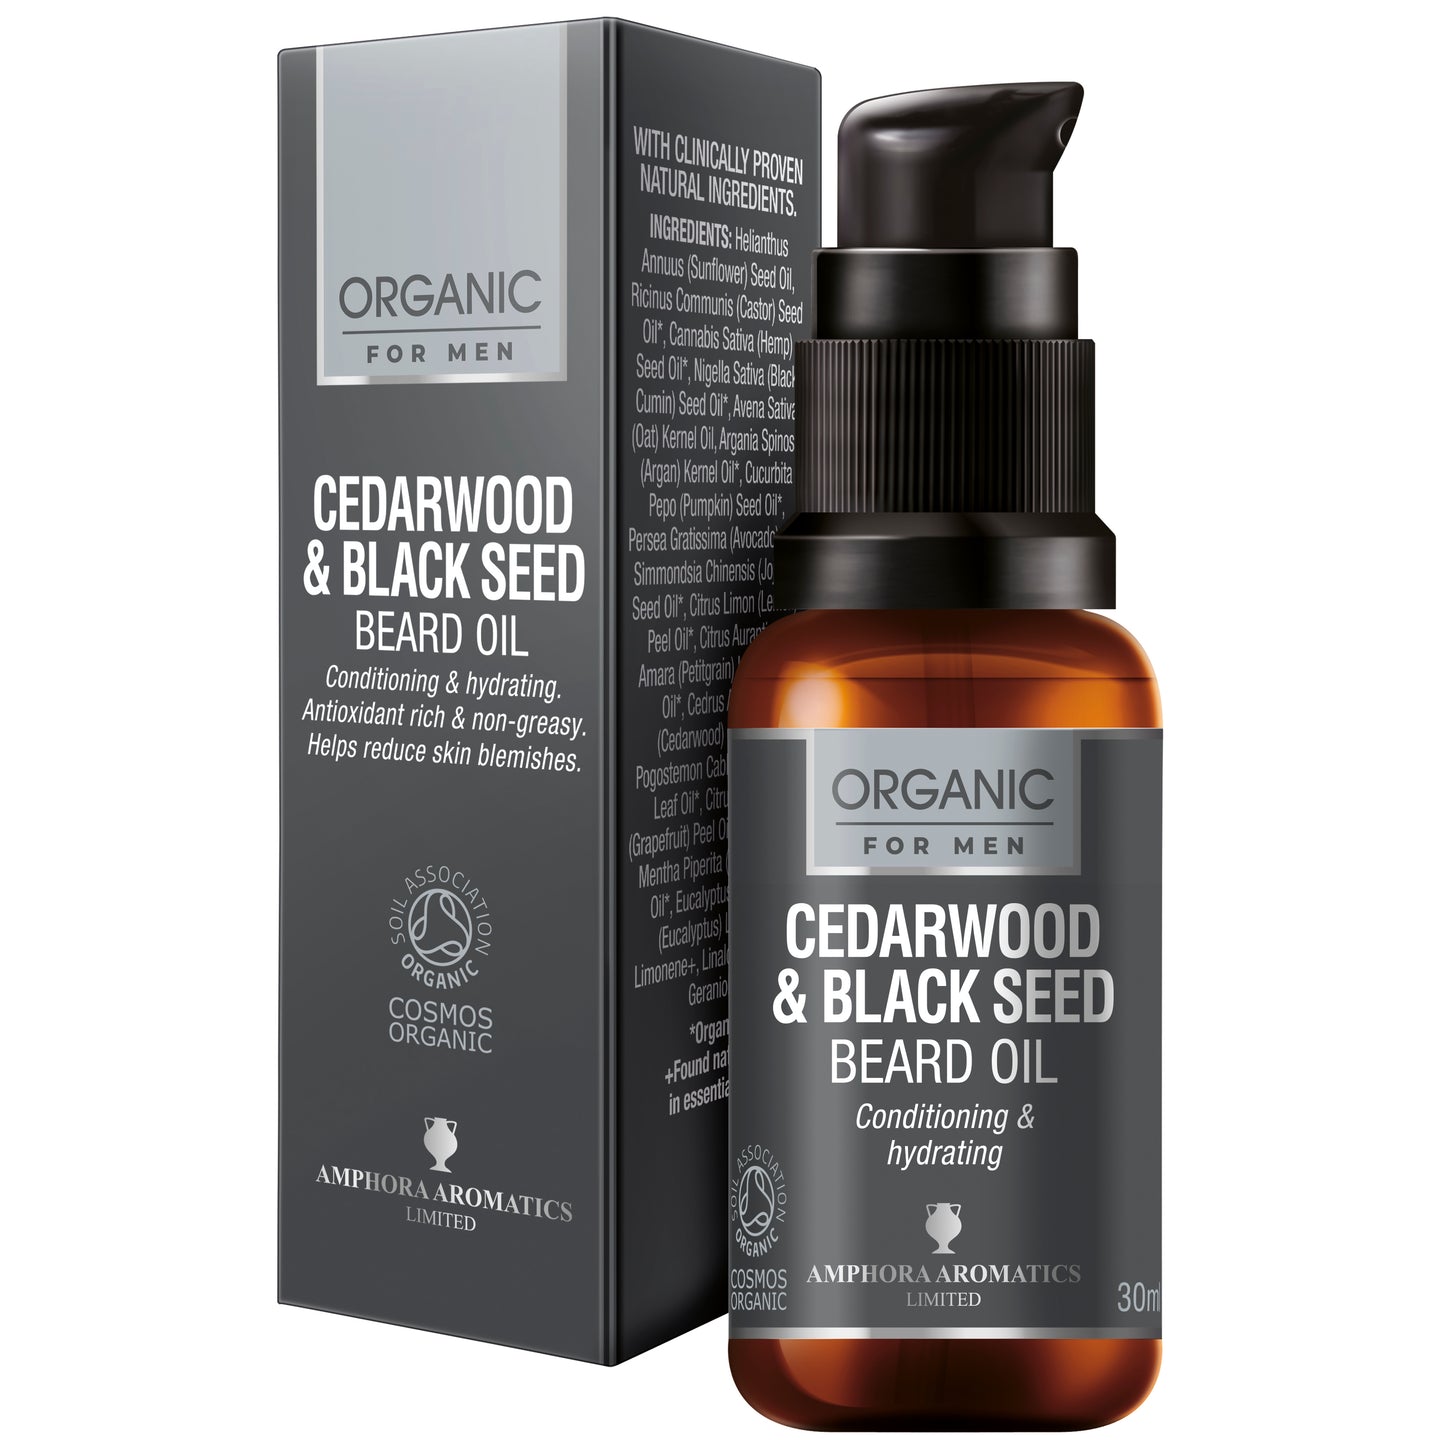 Cedarwood & Black Seed Beard Oil